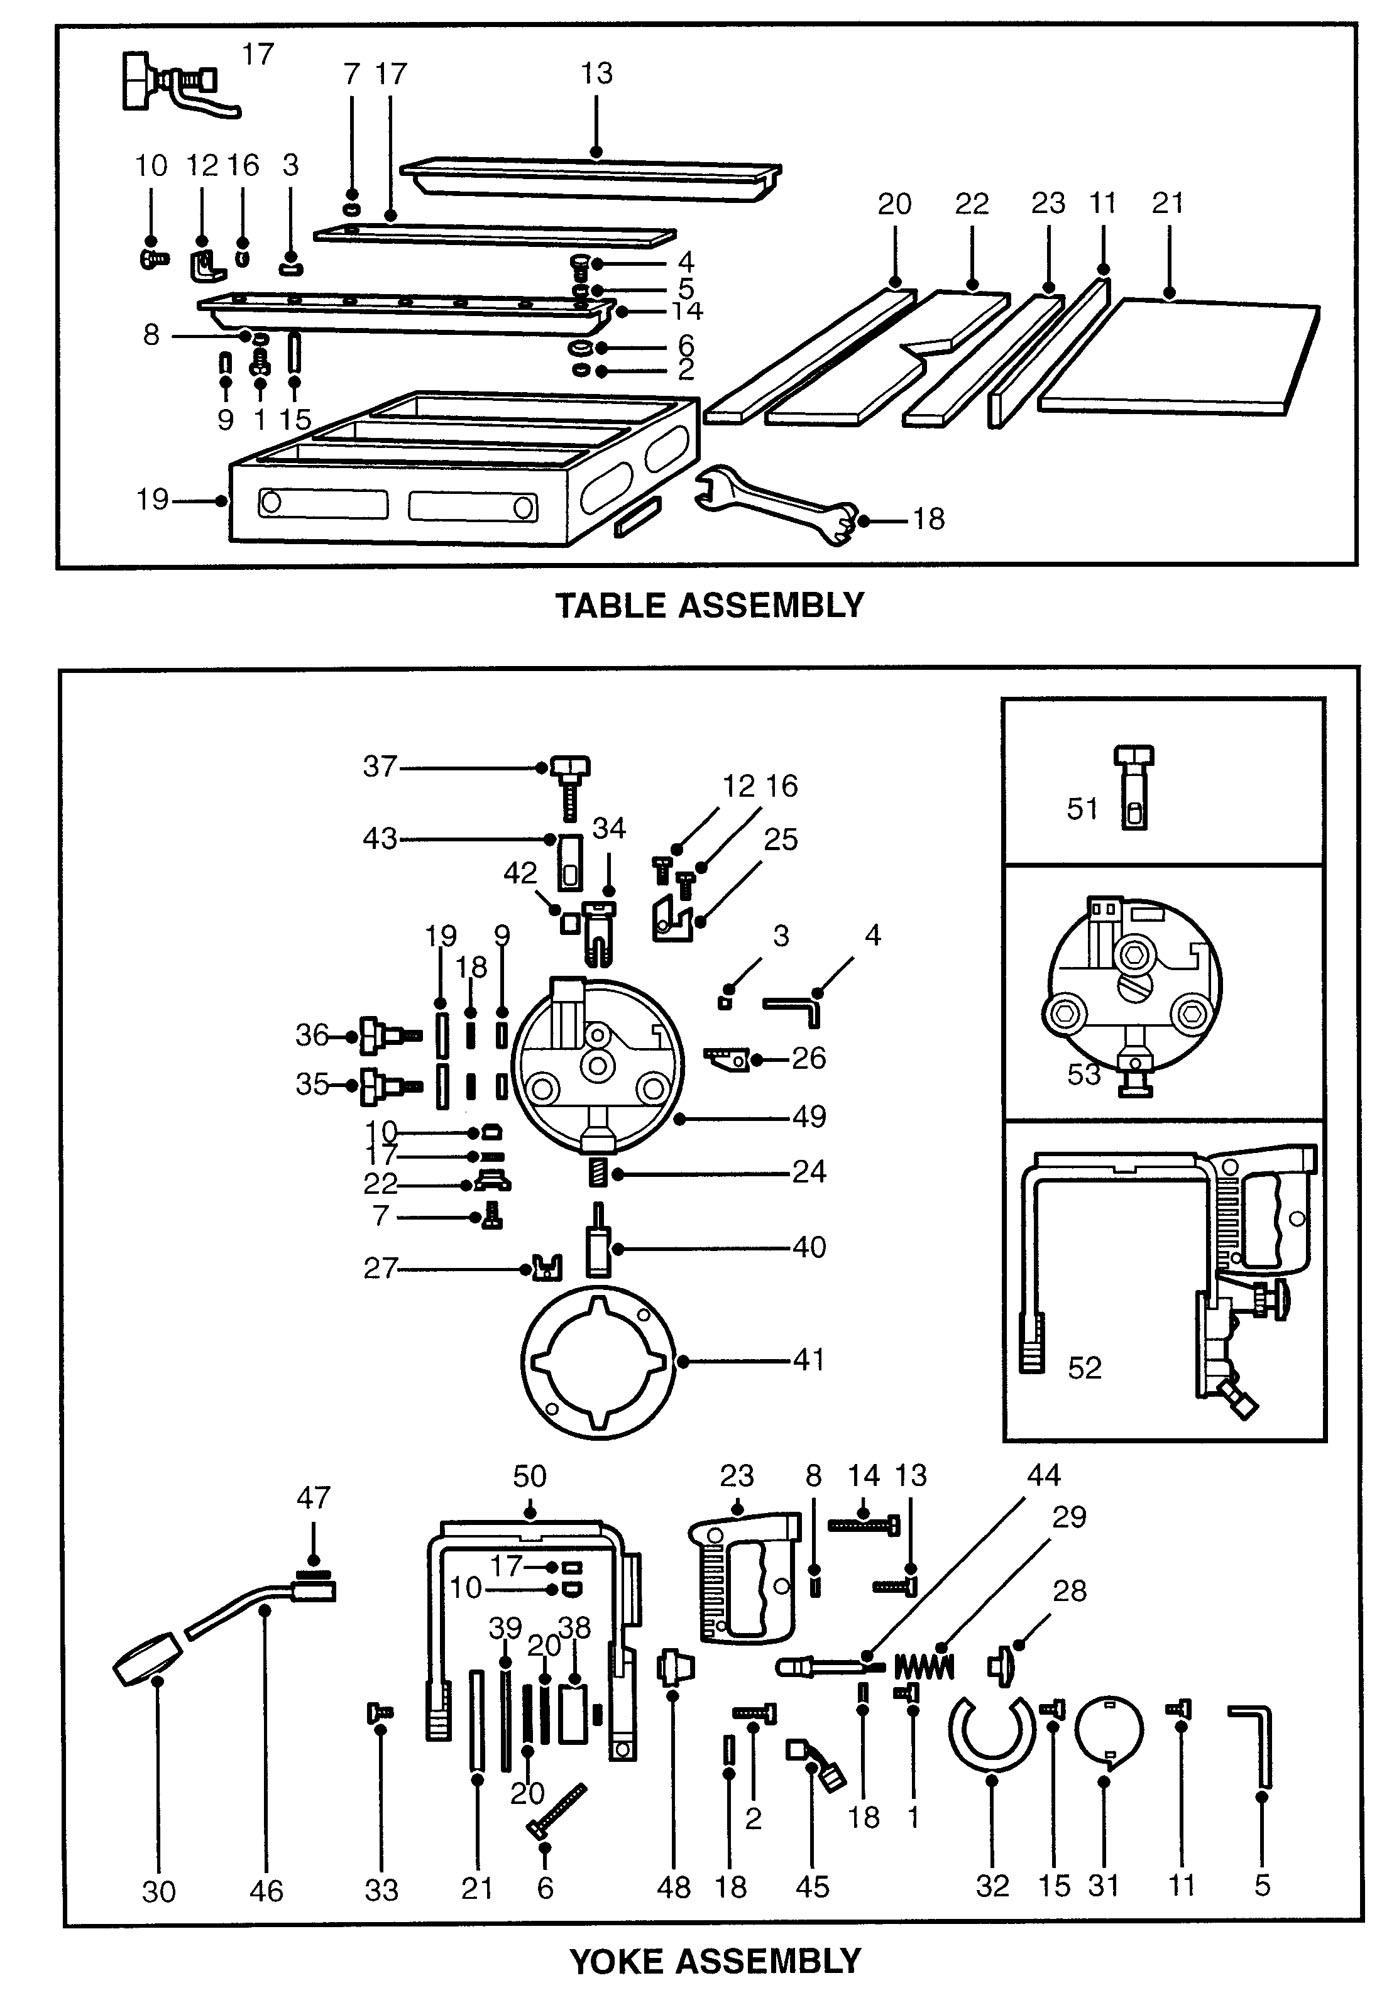 dewalt 1712 radial arm saw wiring diagram